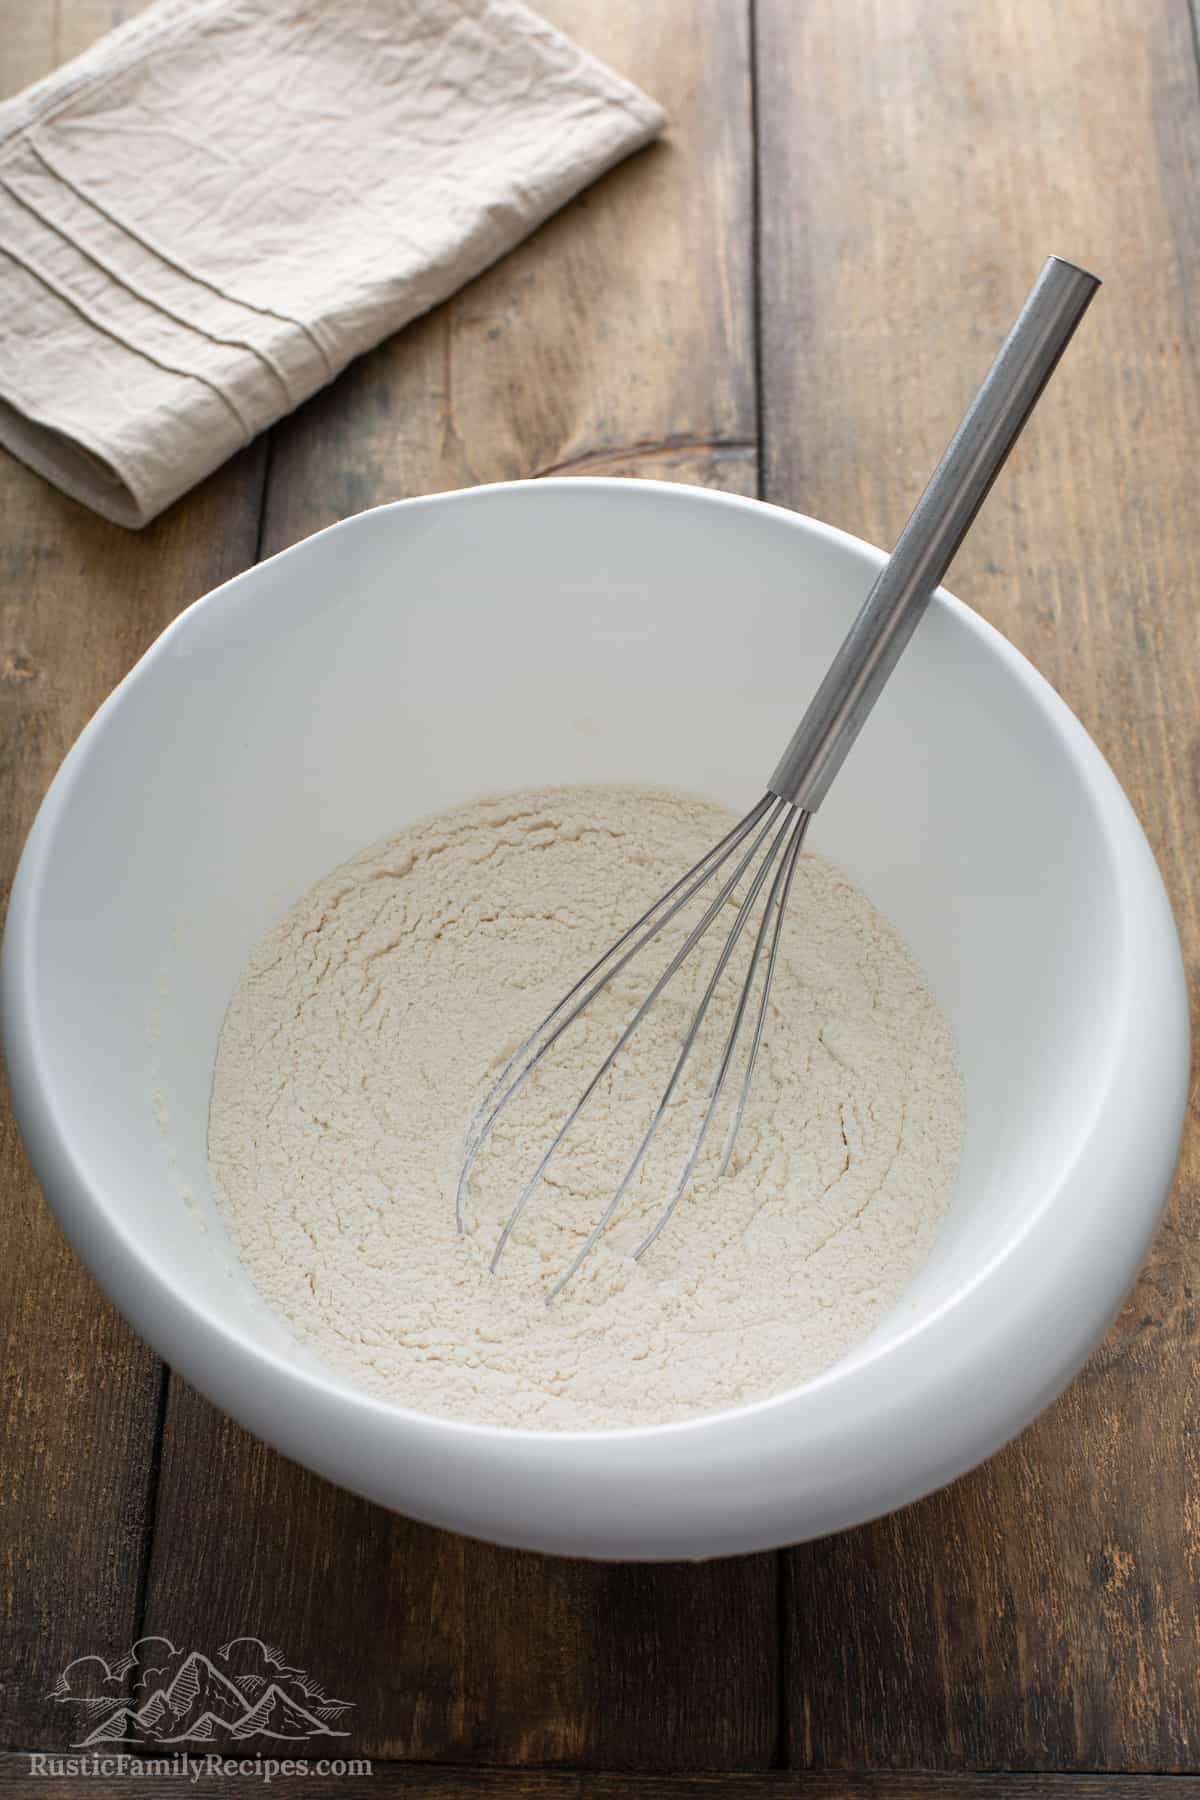 Dry pancake ingredients in a white bowl